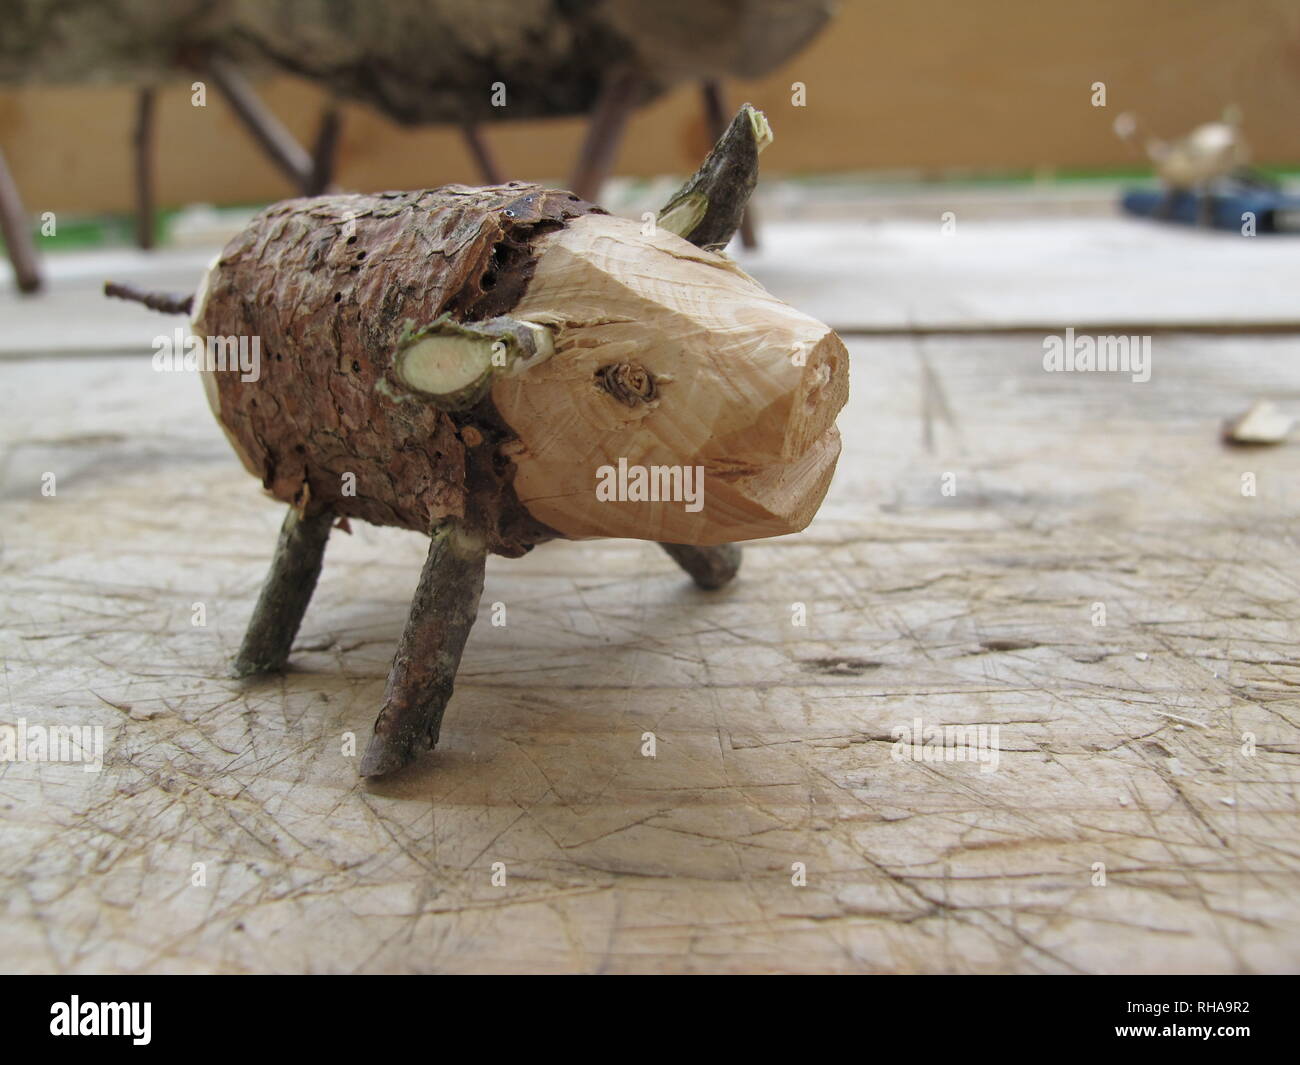 Dekorative Spielzeug Schwein. Handwerk Projekt mit natürlichen Materialien ohne Leim oder Schrauben. Stockfoto